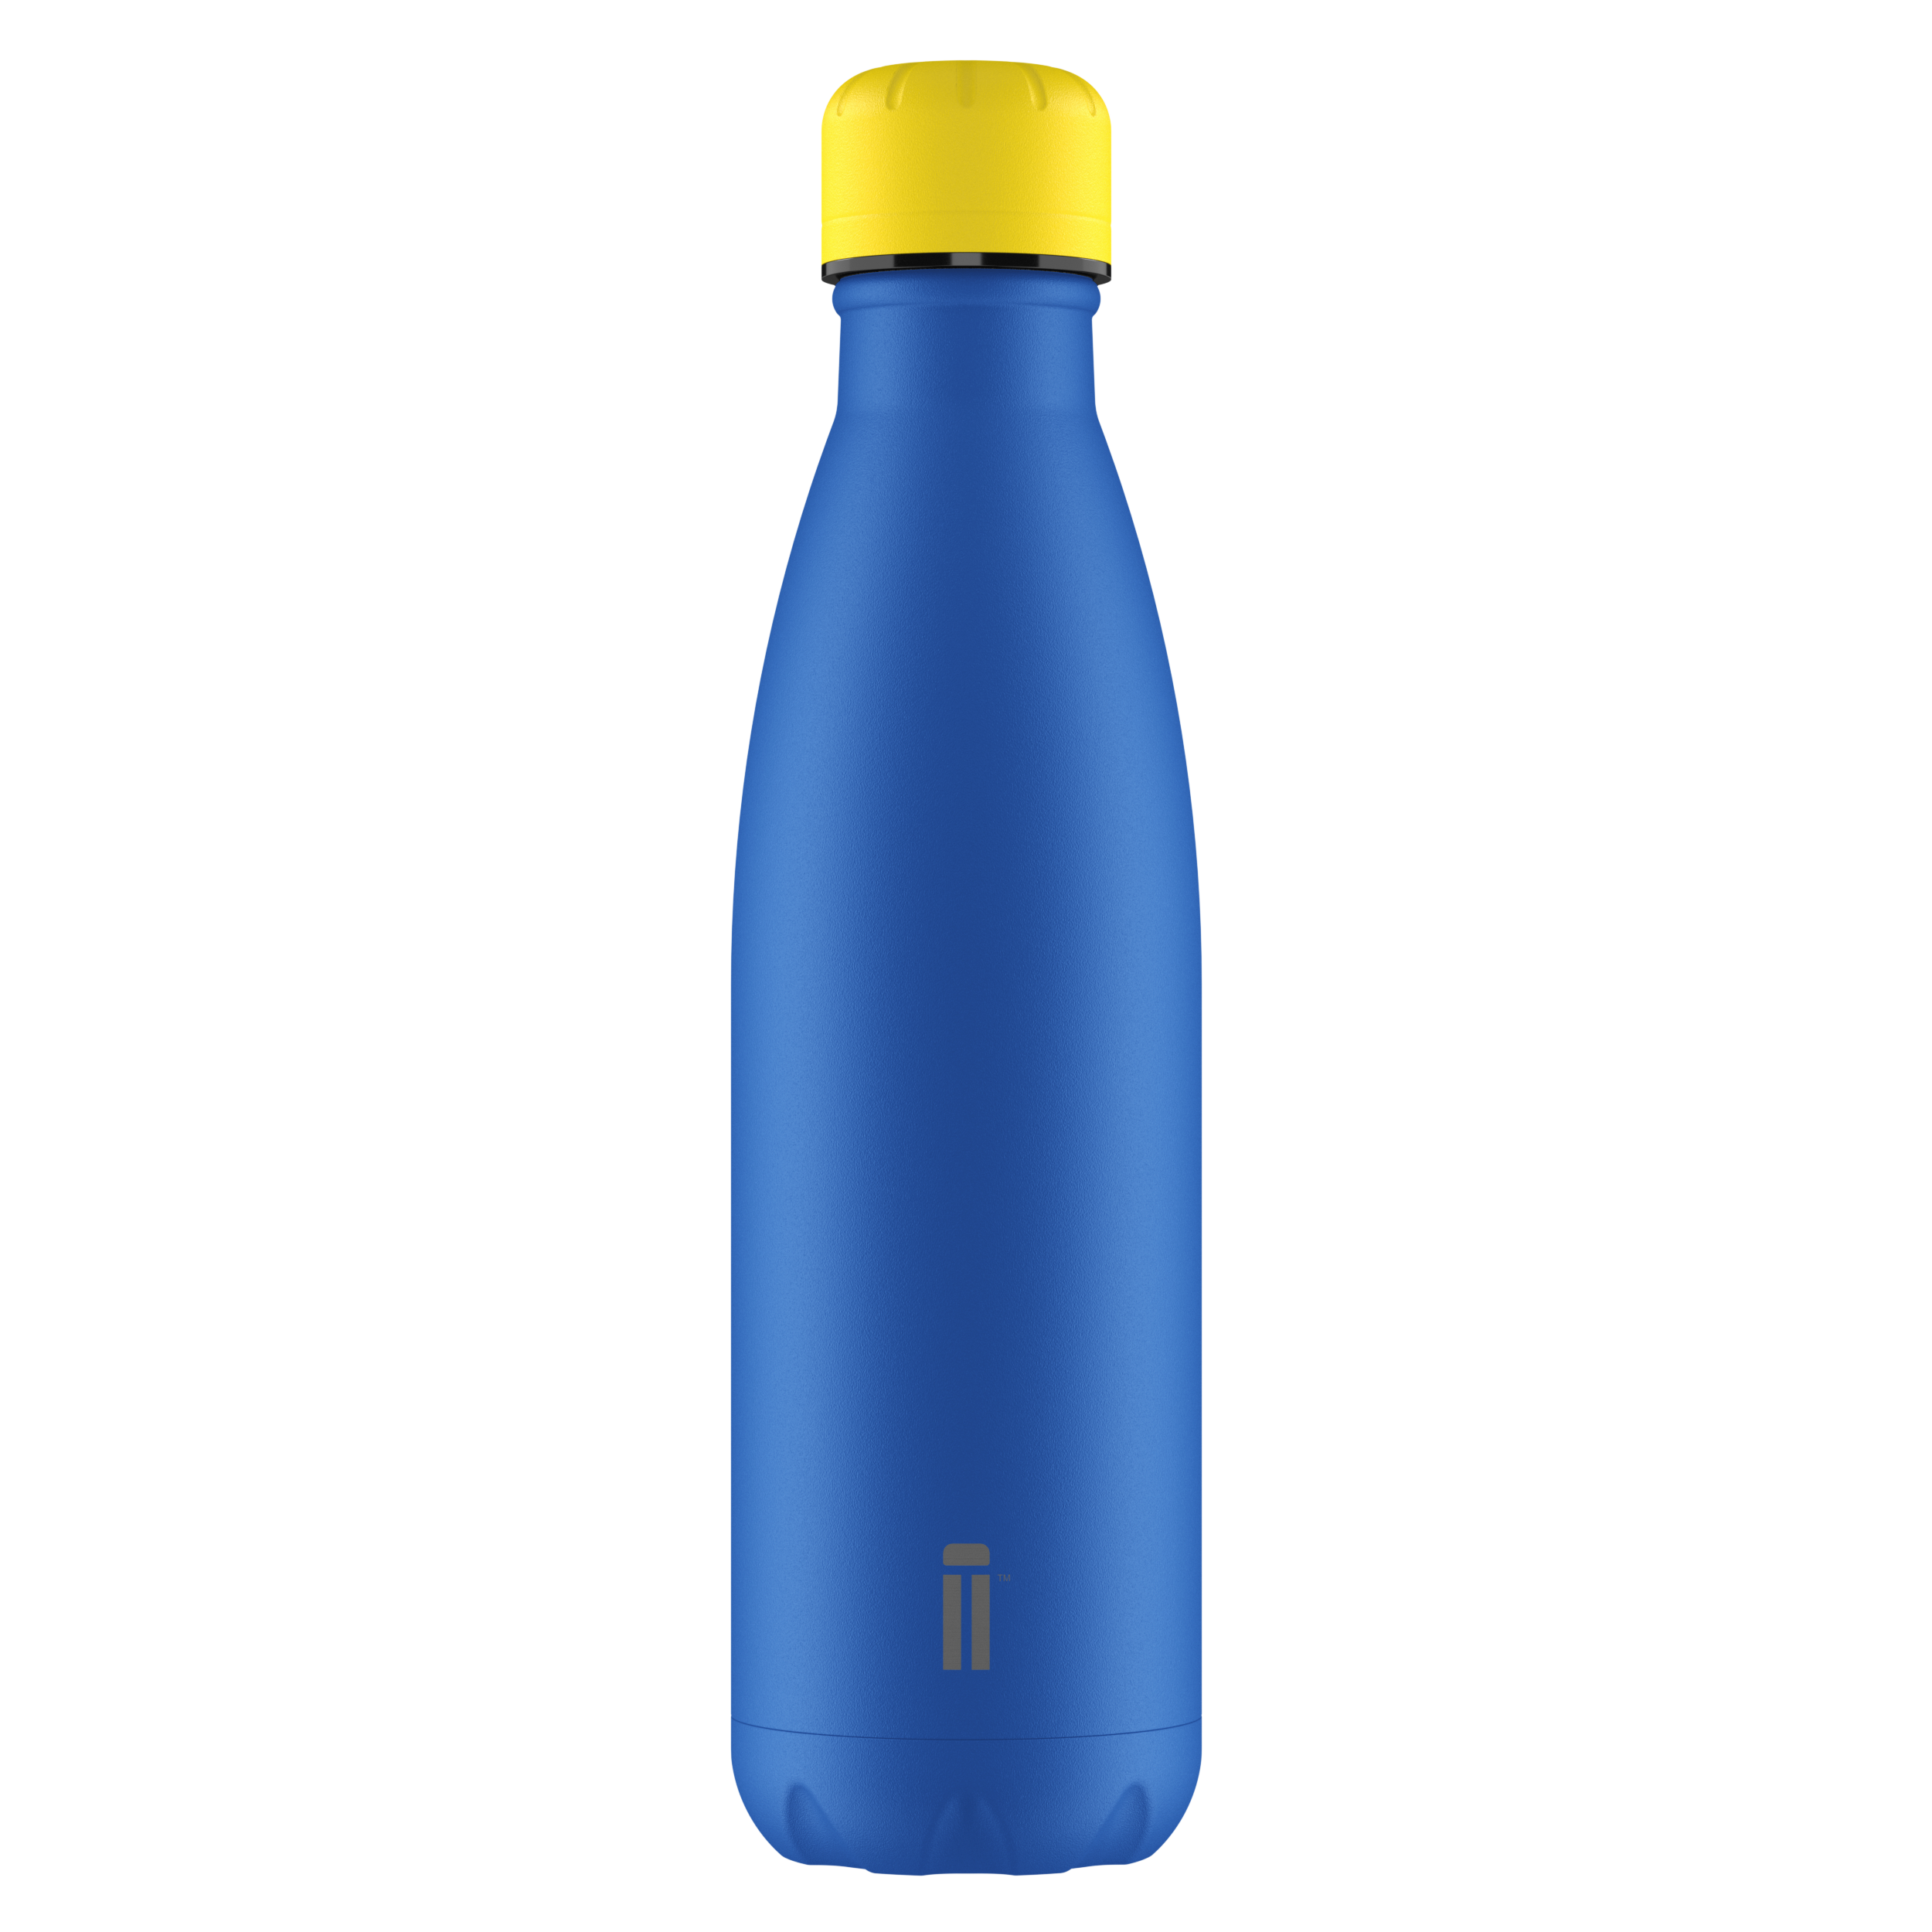 Marlin Blue Water Bottle